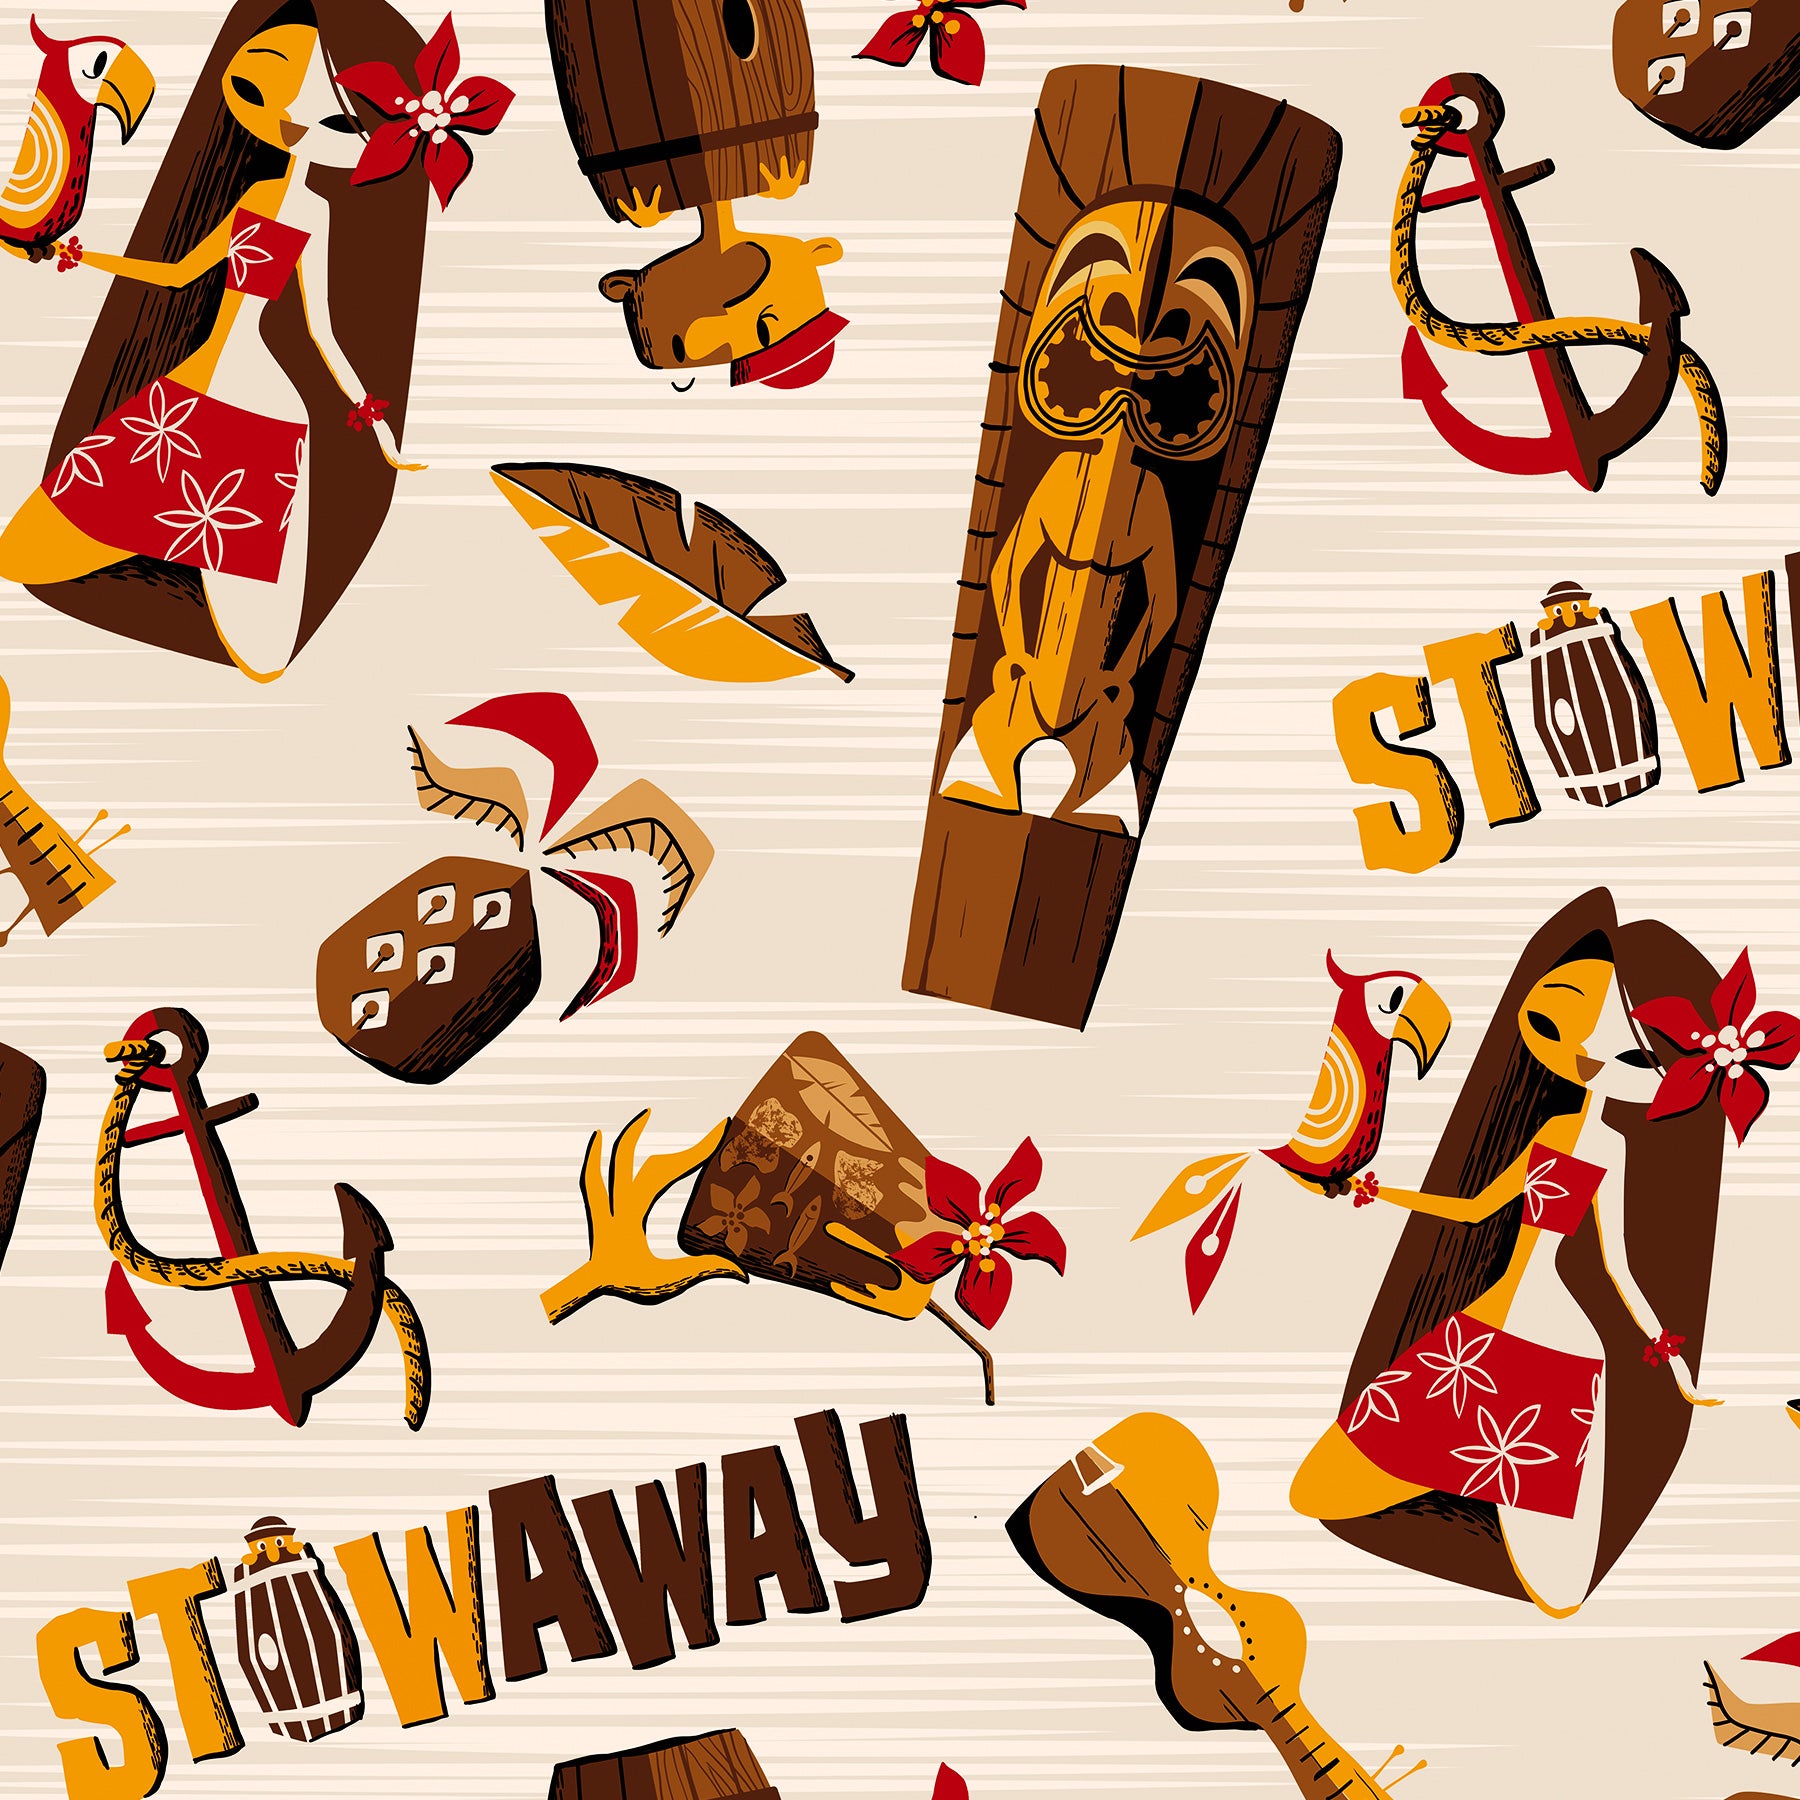 Stowaway Hawaiian shirts 2022